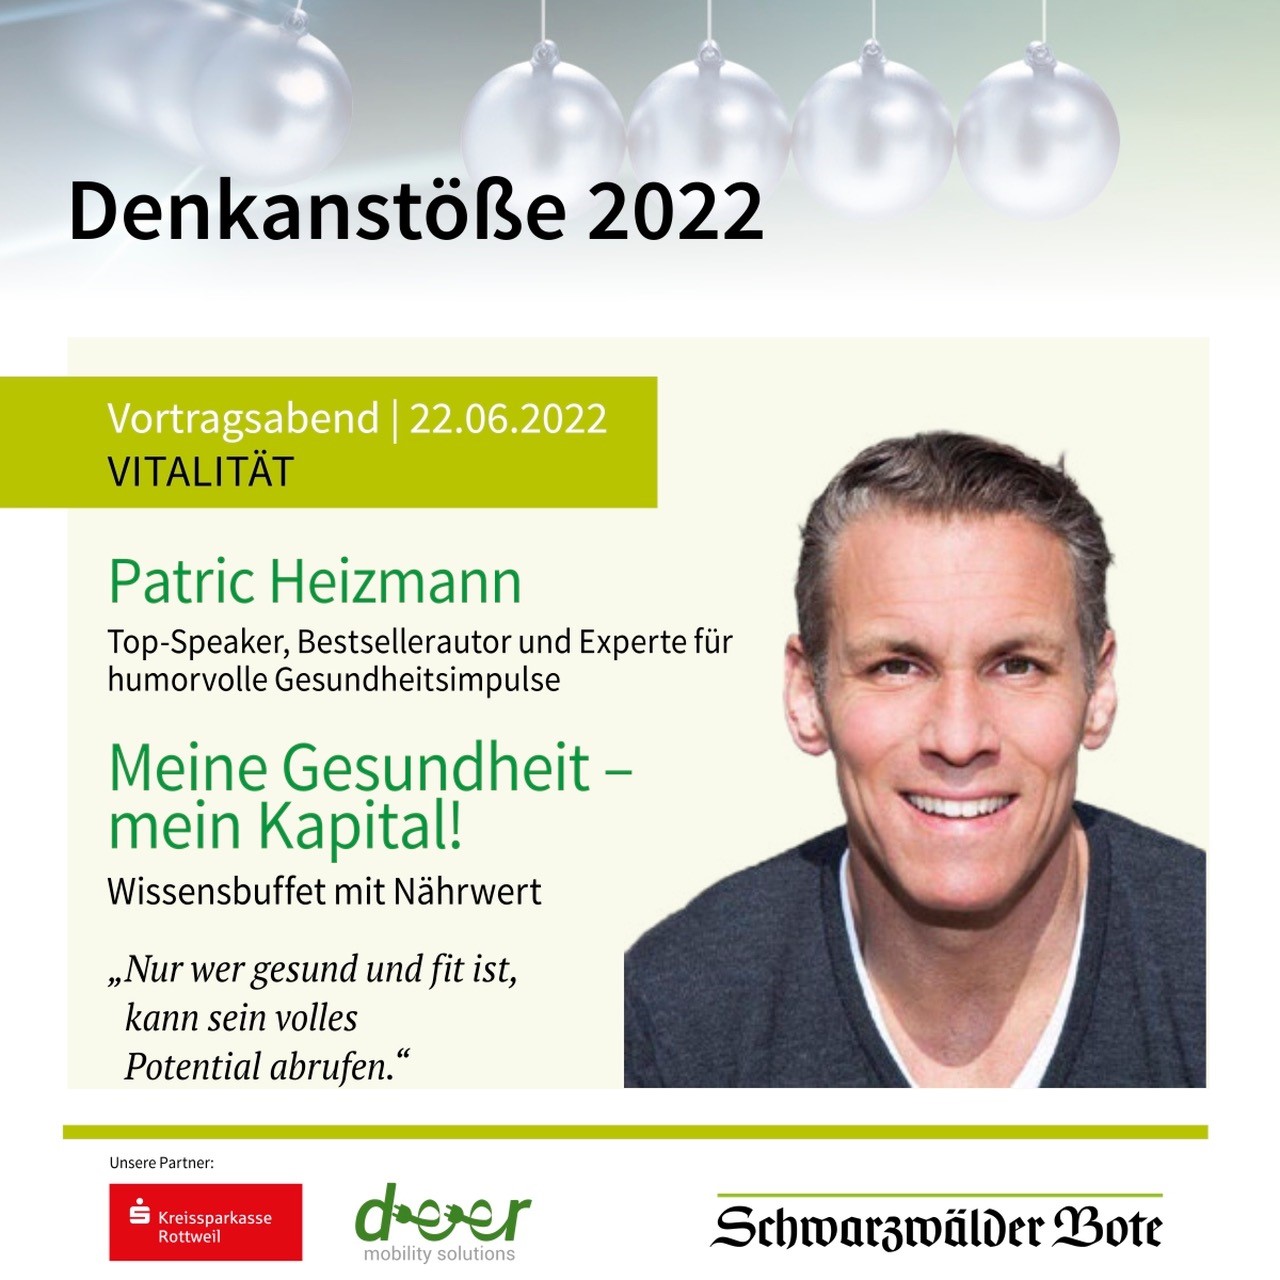 Denkanstöße 2022 mit Patric Heizmann